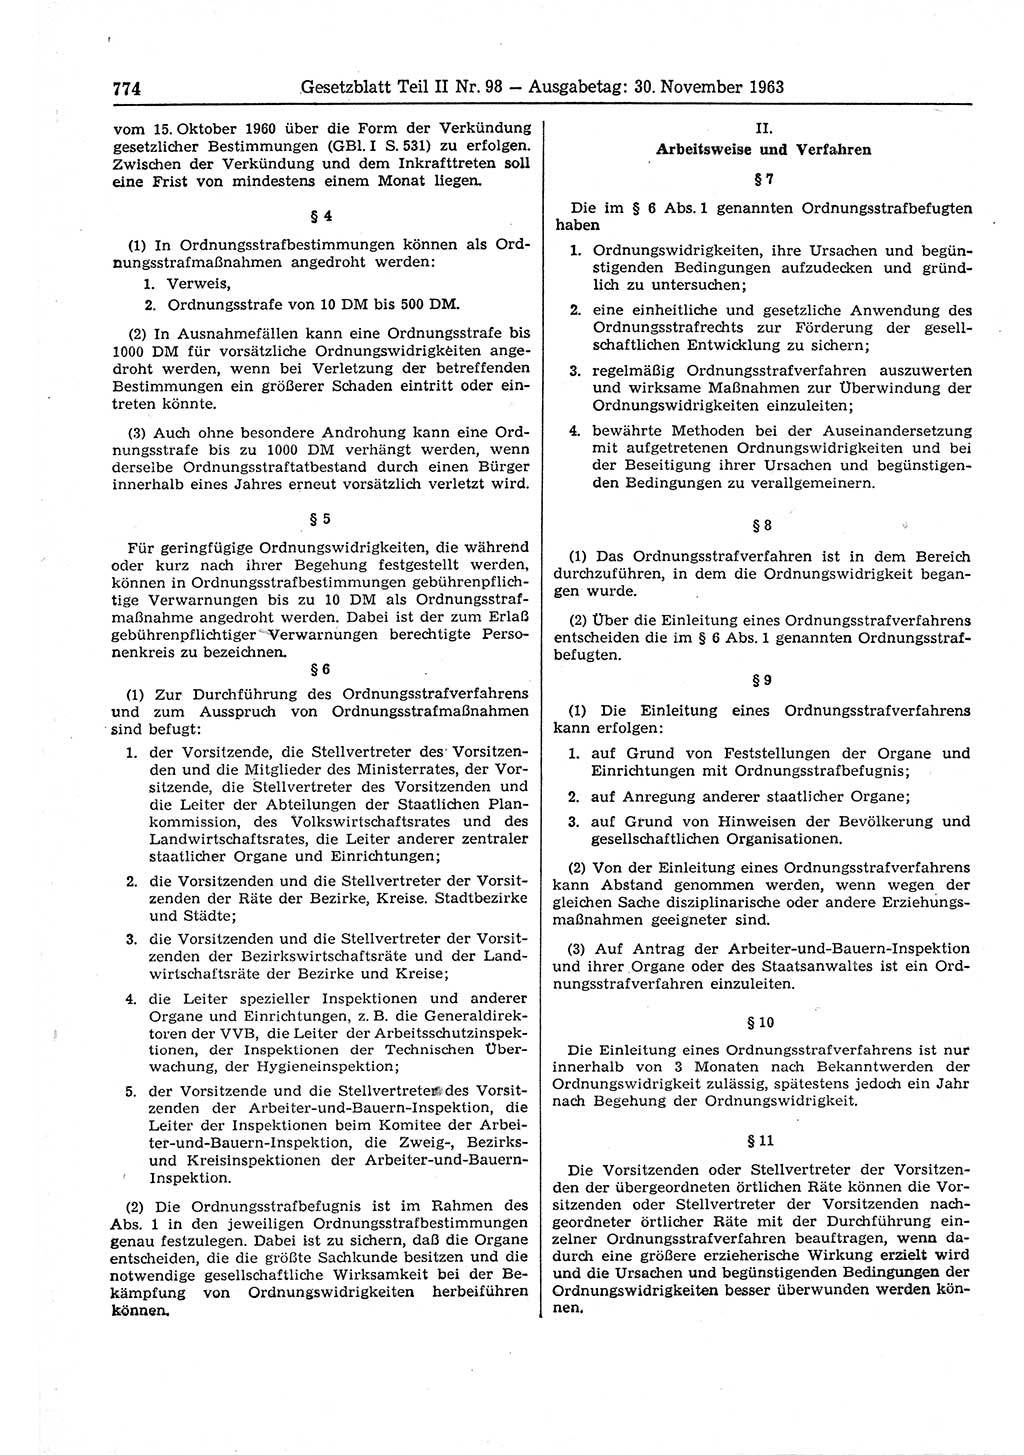 Gesetzblatt (GBl.) der Deutschen Demokratischen Republik (DDR) Teil ⅠⅠ 1963, Seite 774 (GBl. DDR ⅠⅠ 1963, S. 774)